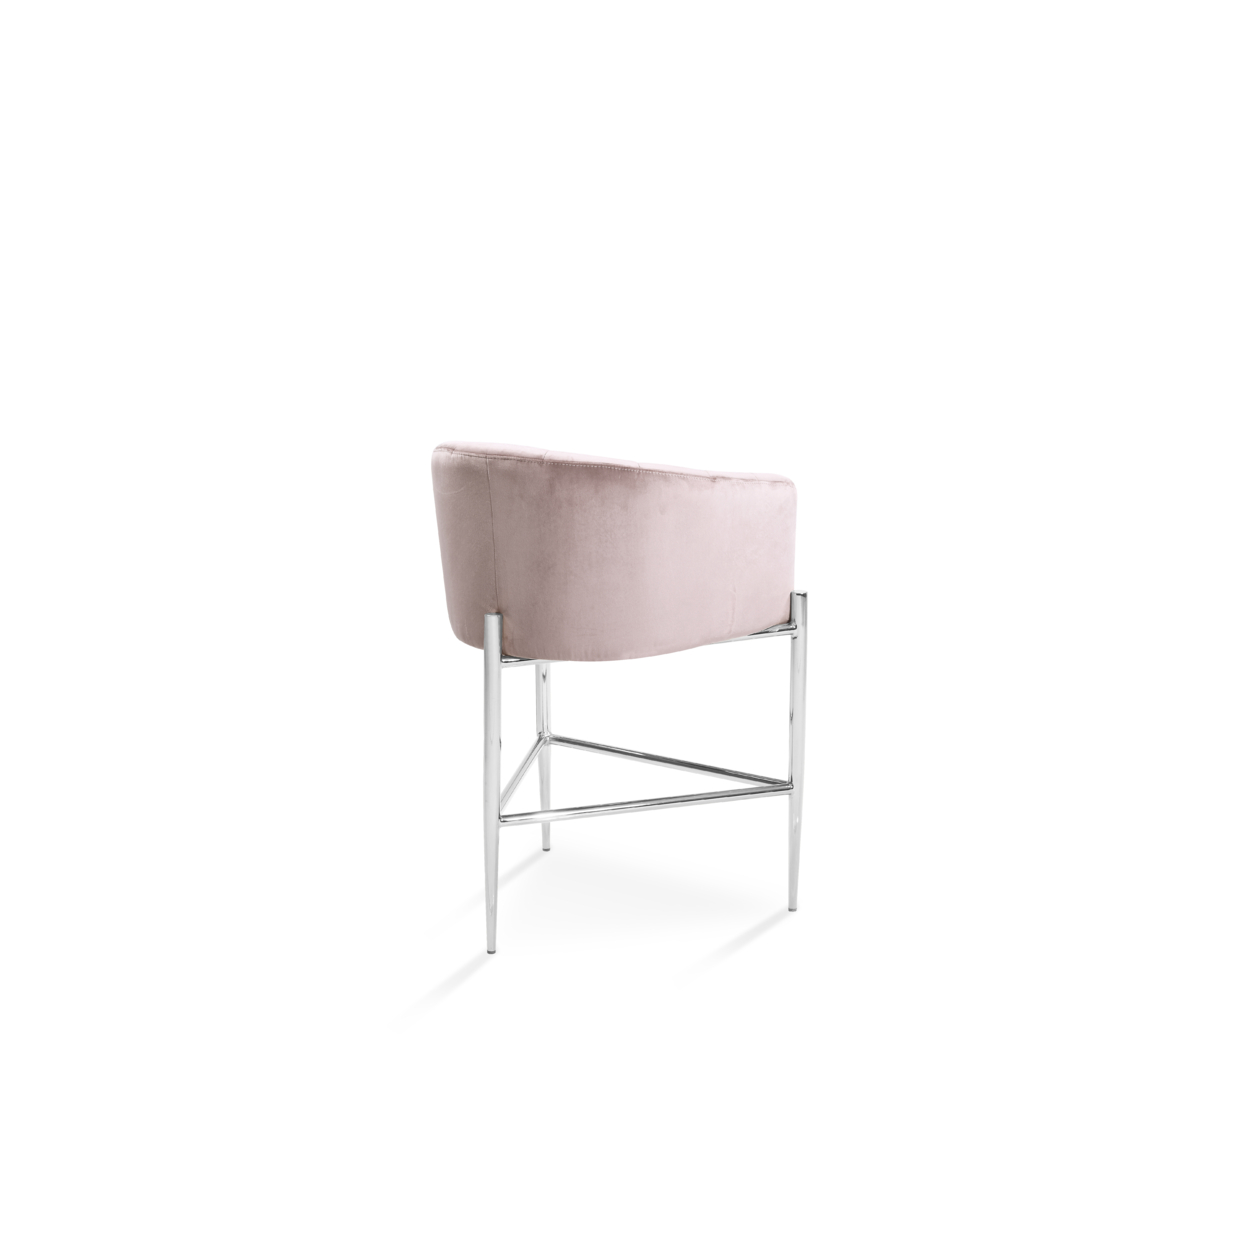 Iconic Home Ardee Counter Stool Chair Velvet Upholstered Shelter Arm Shell Design 3 Legged Chrome Tone Solid Metal Base - Blush